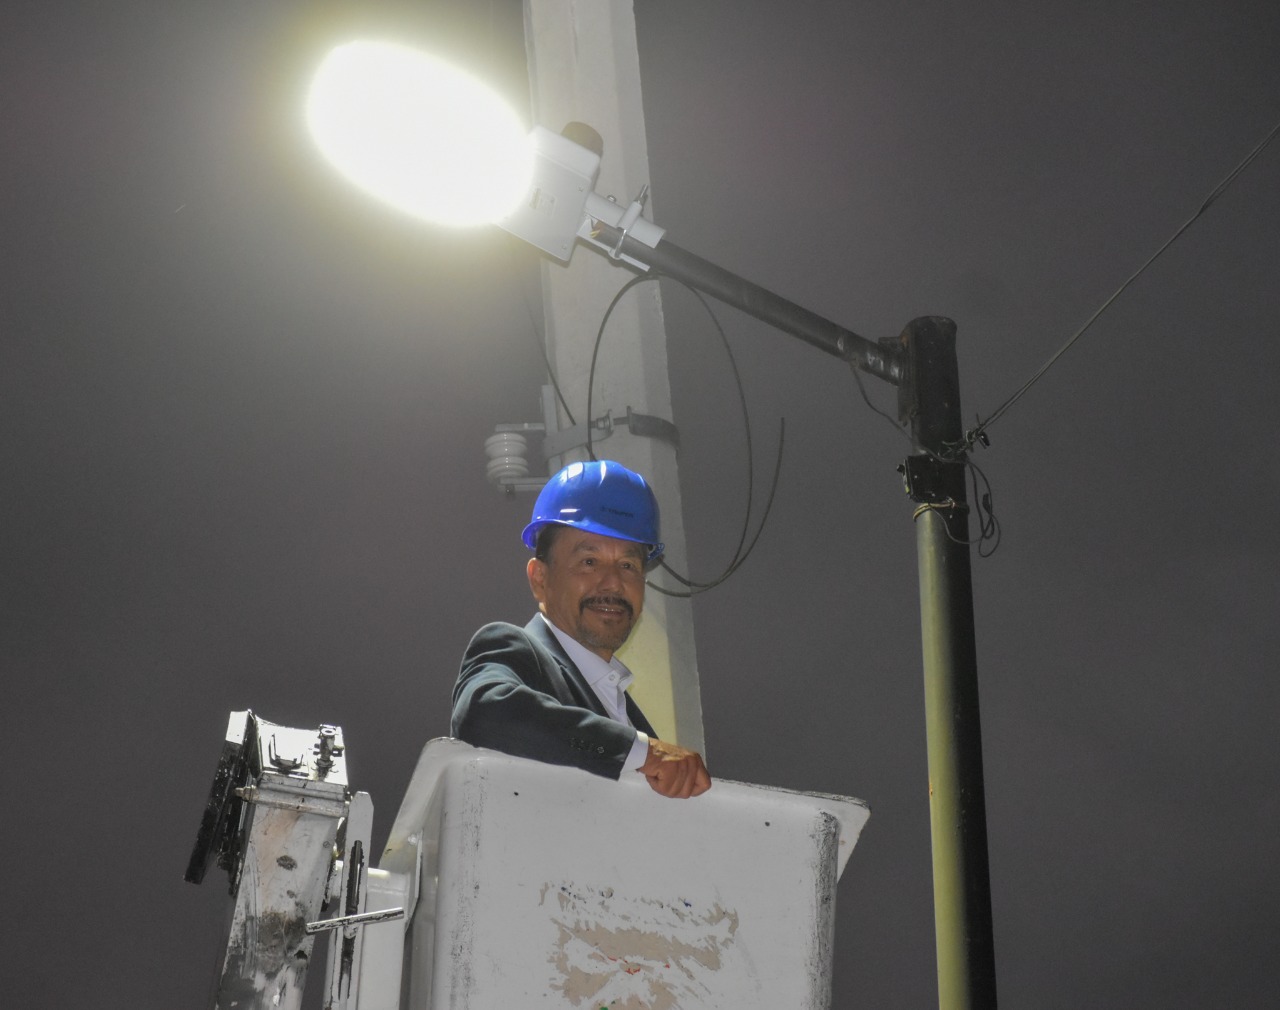 Nuevas lámparas mejoran seguridad en Atizapán de Zaragoza